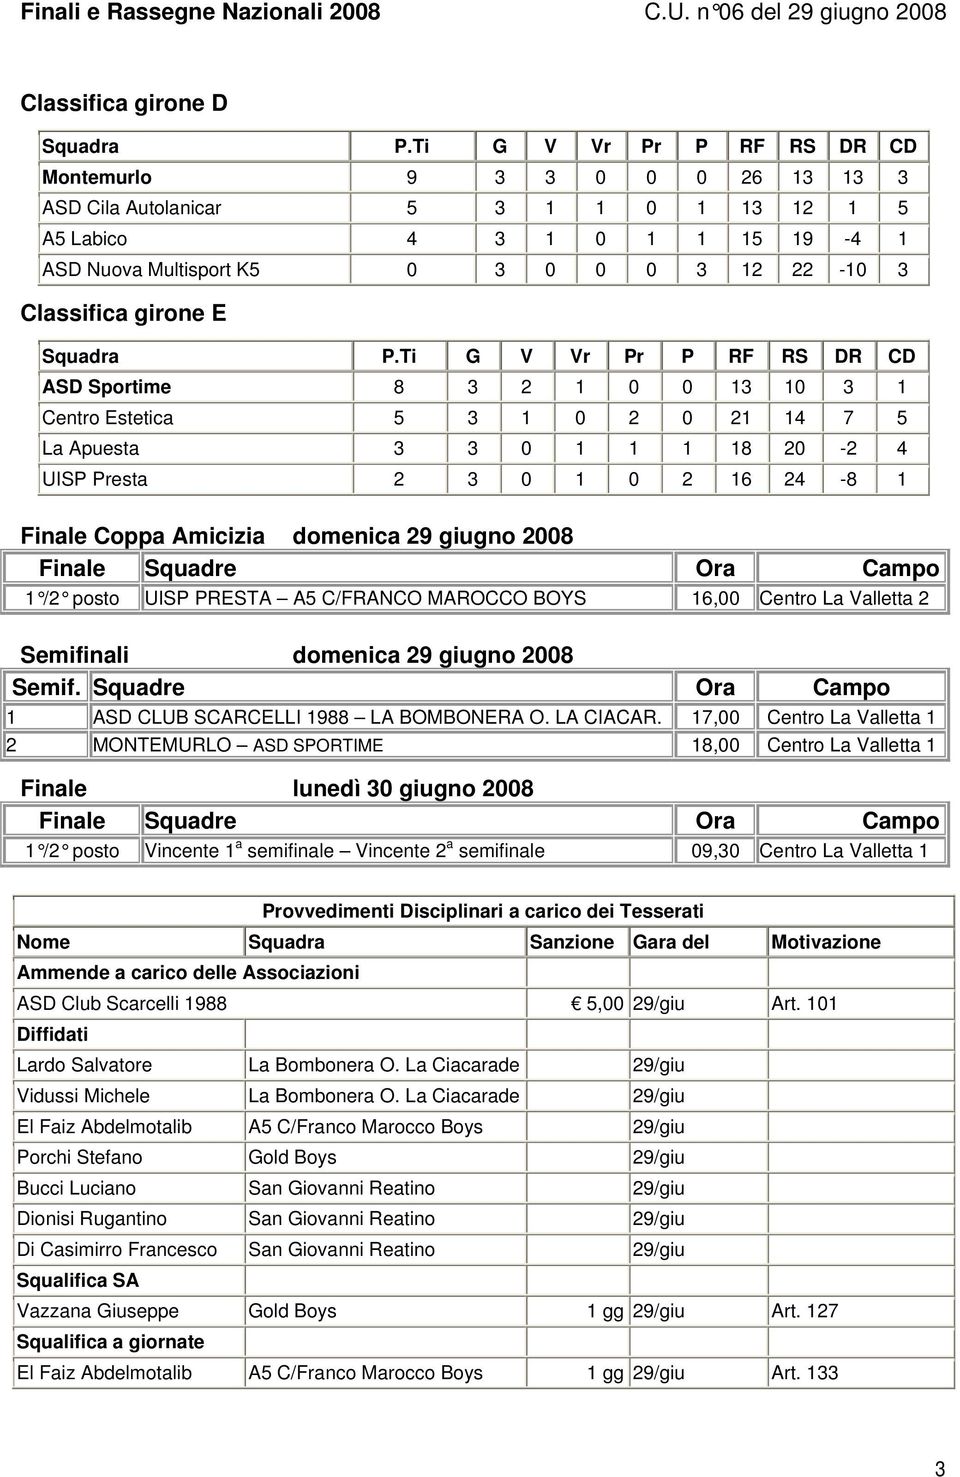 1 /2 posto UISP PRESTA A5 C/FRANCO MAROCCO BOYS 16,00 Centro La Valletta 2 Semifinali domenica 29 giugno 2008 Semif. Ora Campo 1 ASD CLUB SCARCELLI 1988 LA BOMBONERA O. LA CIACAR.